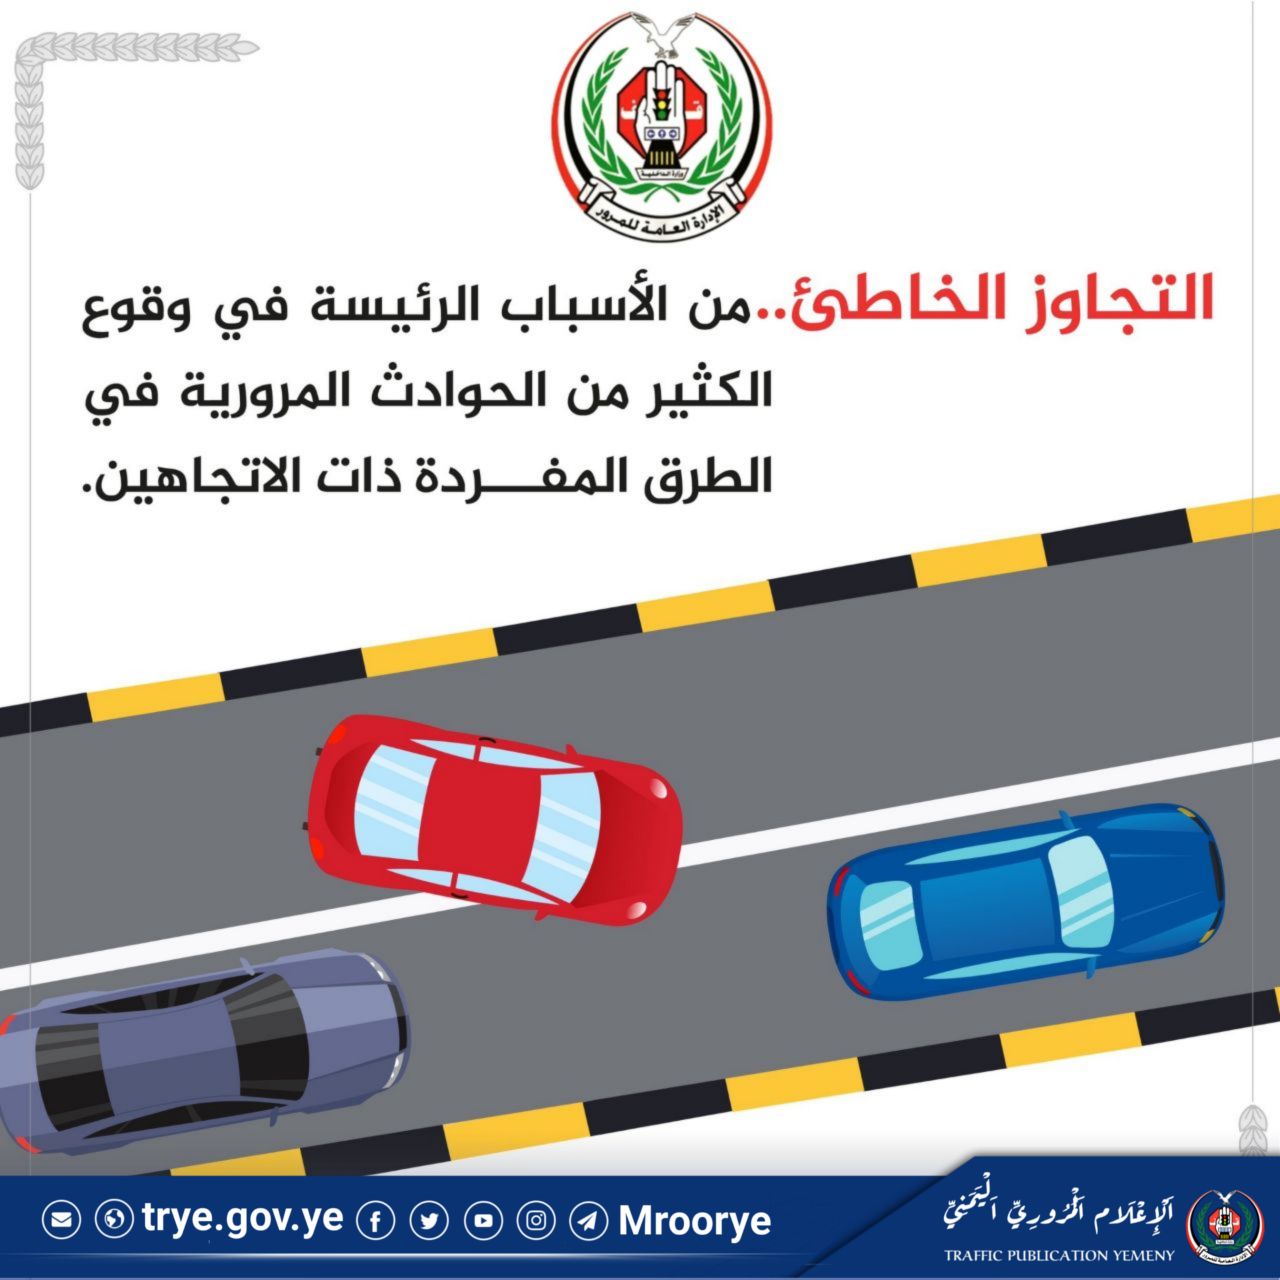 التوعية المرورية :مجموعة من الإجراءات التي تهدف إلى توعية السائقين والمشاة بقواعد المرور